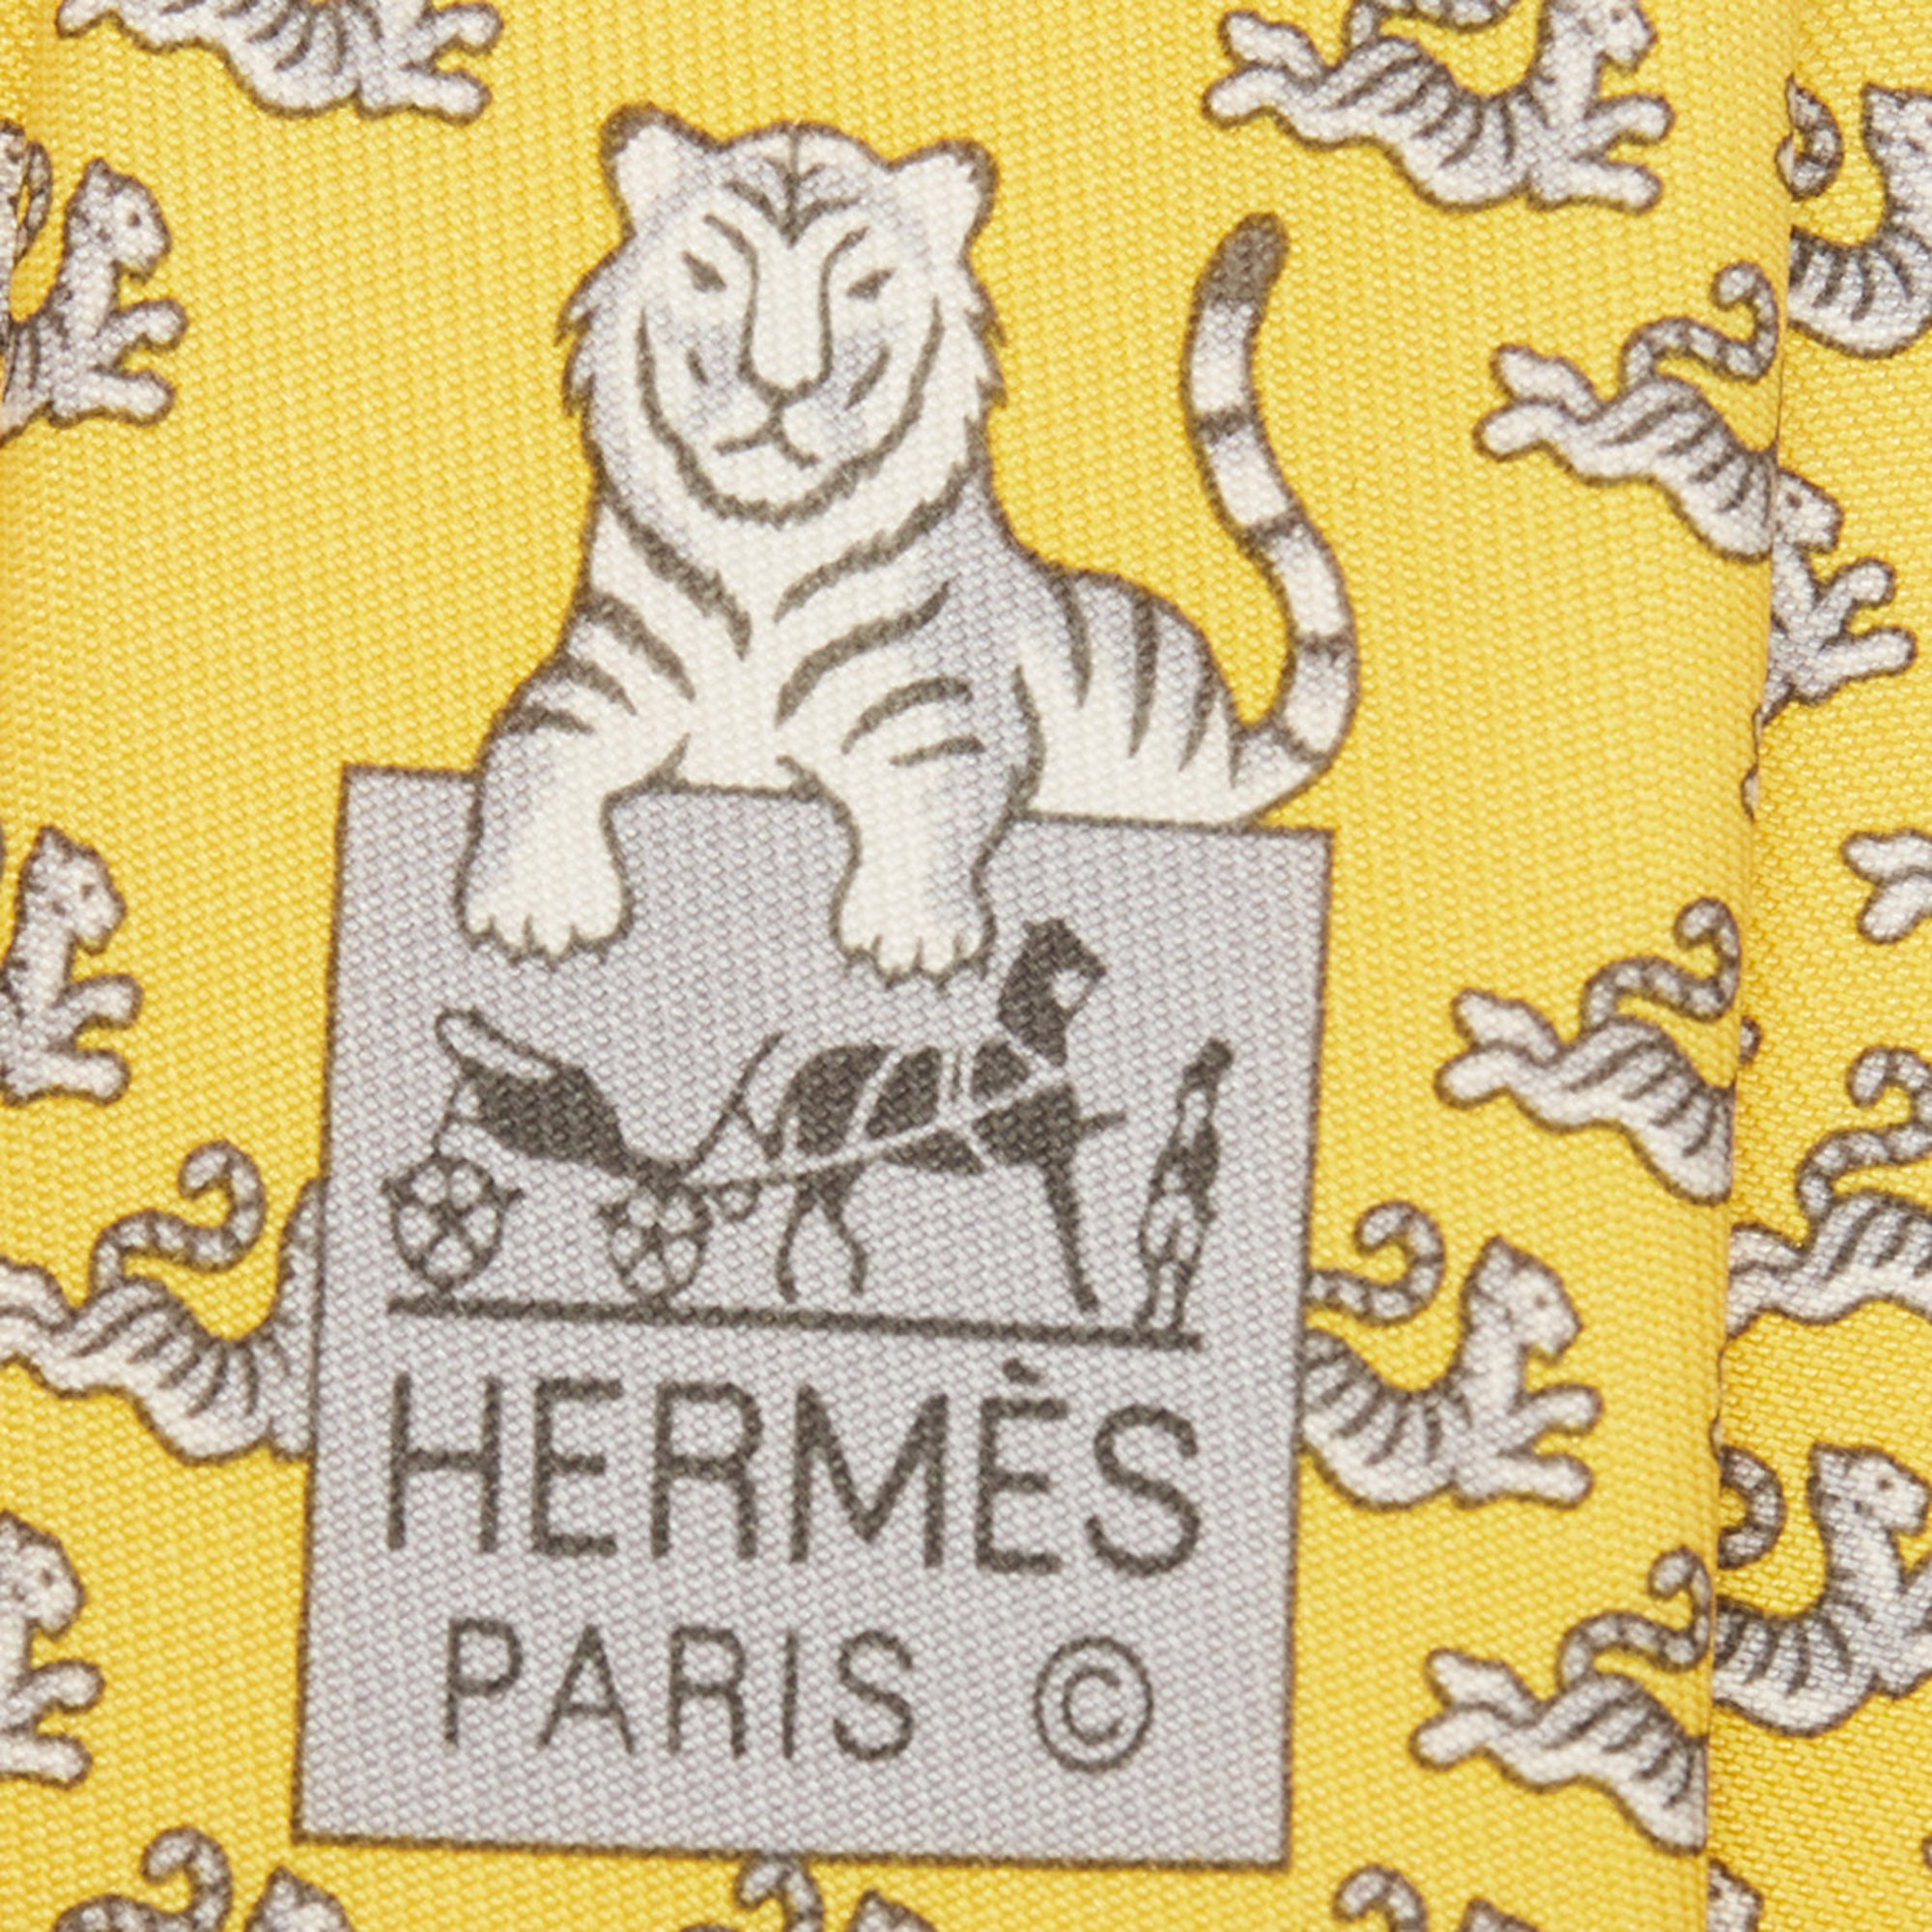 Hermes Yellow Happy Tiger Printed Silk Slim Tie